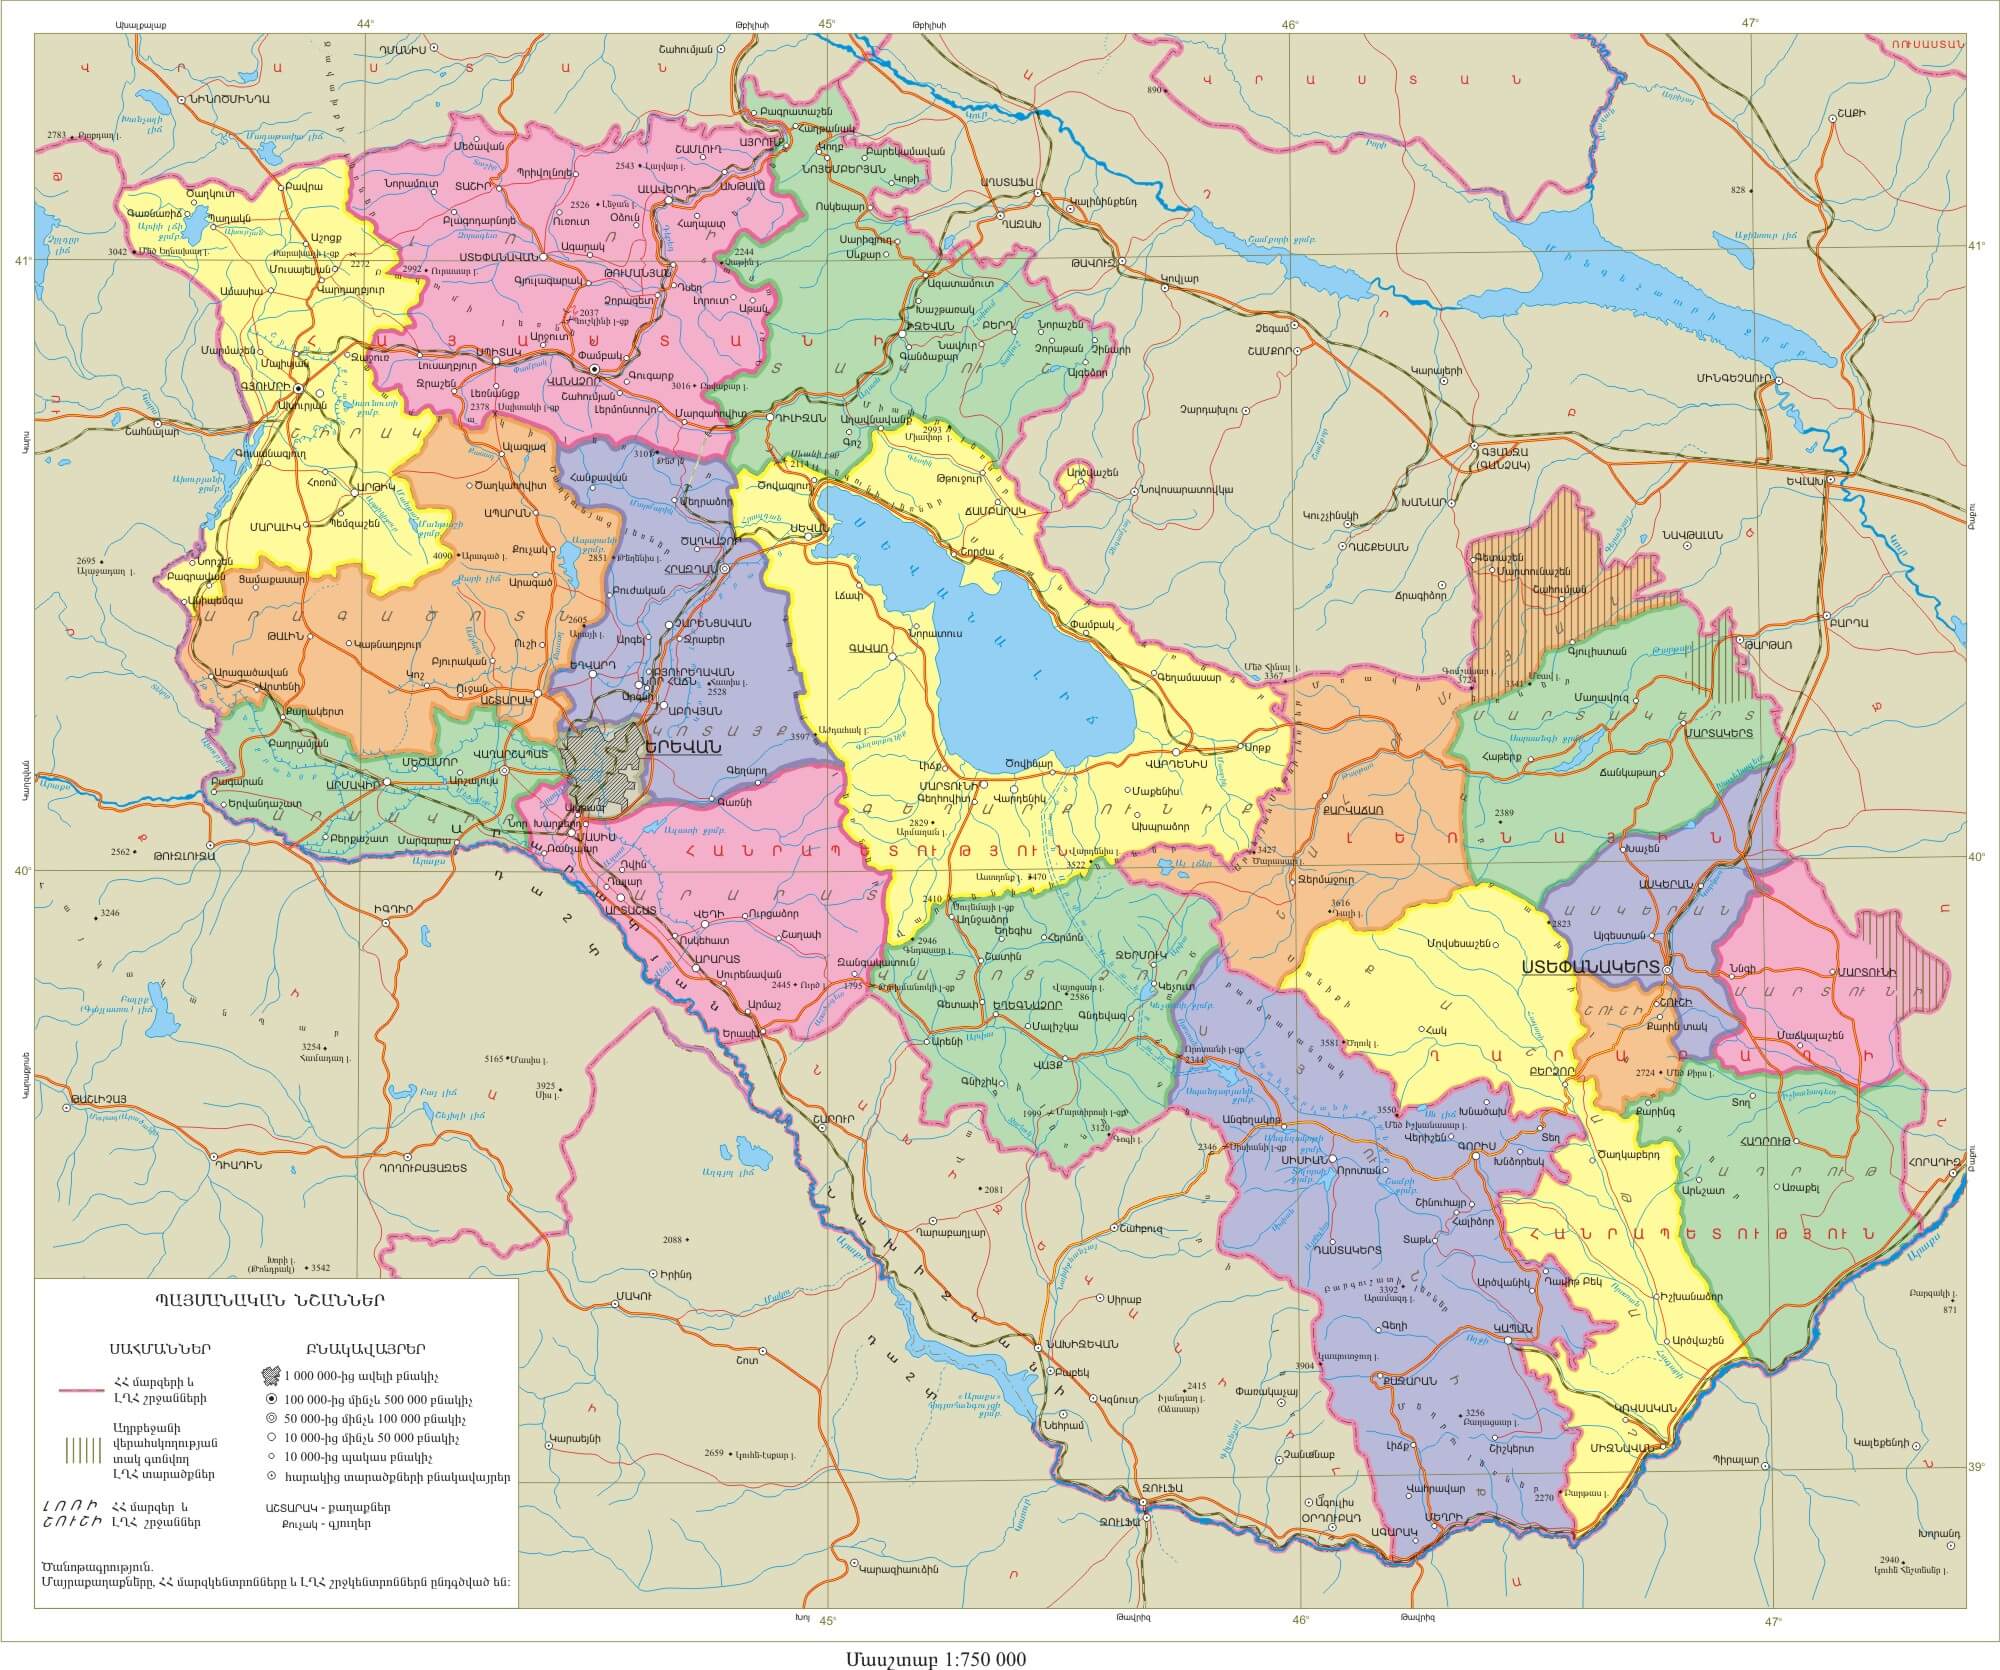 ermenistan karapag haritasi